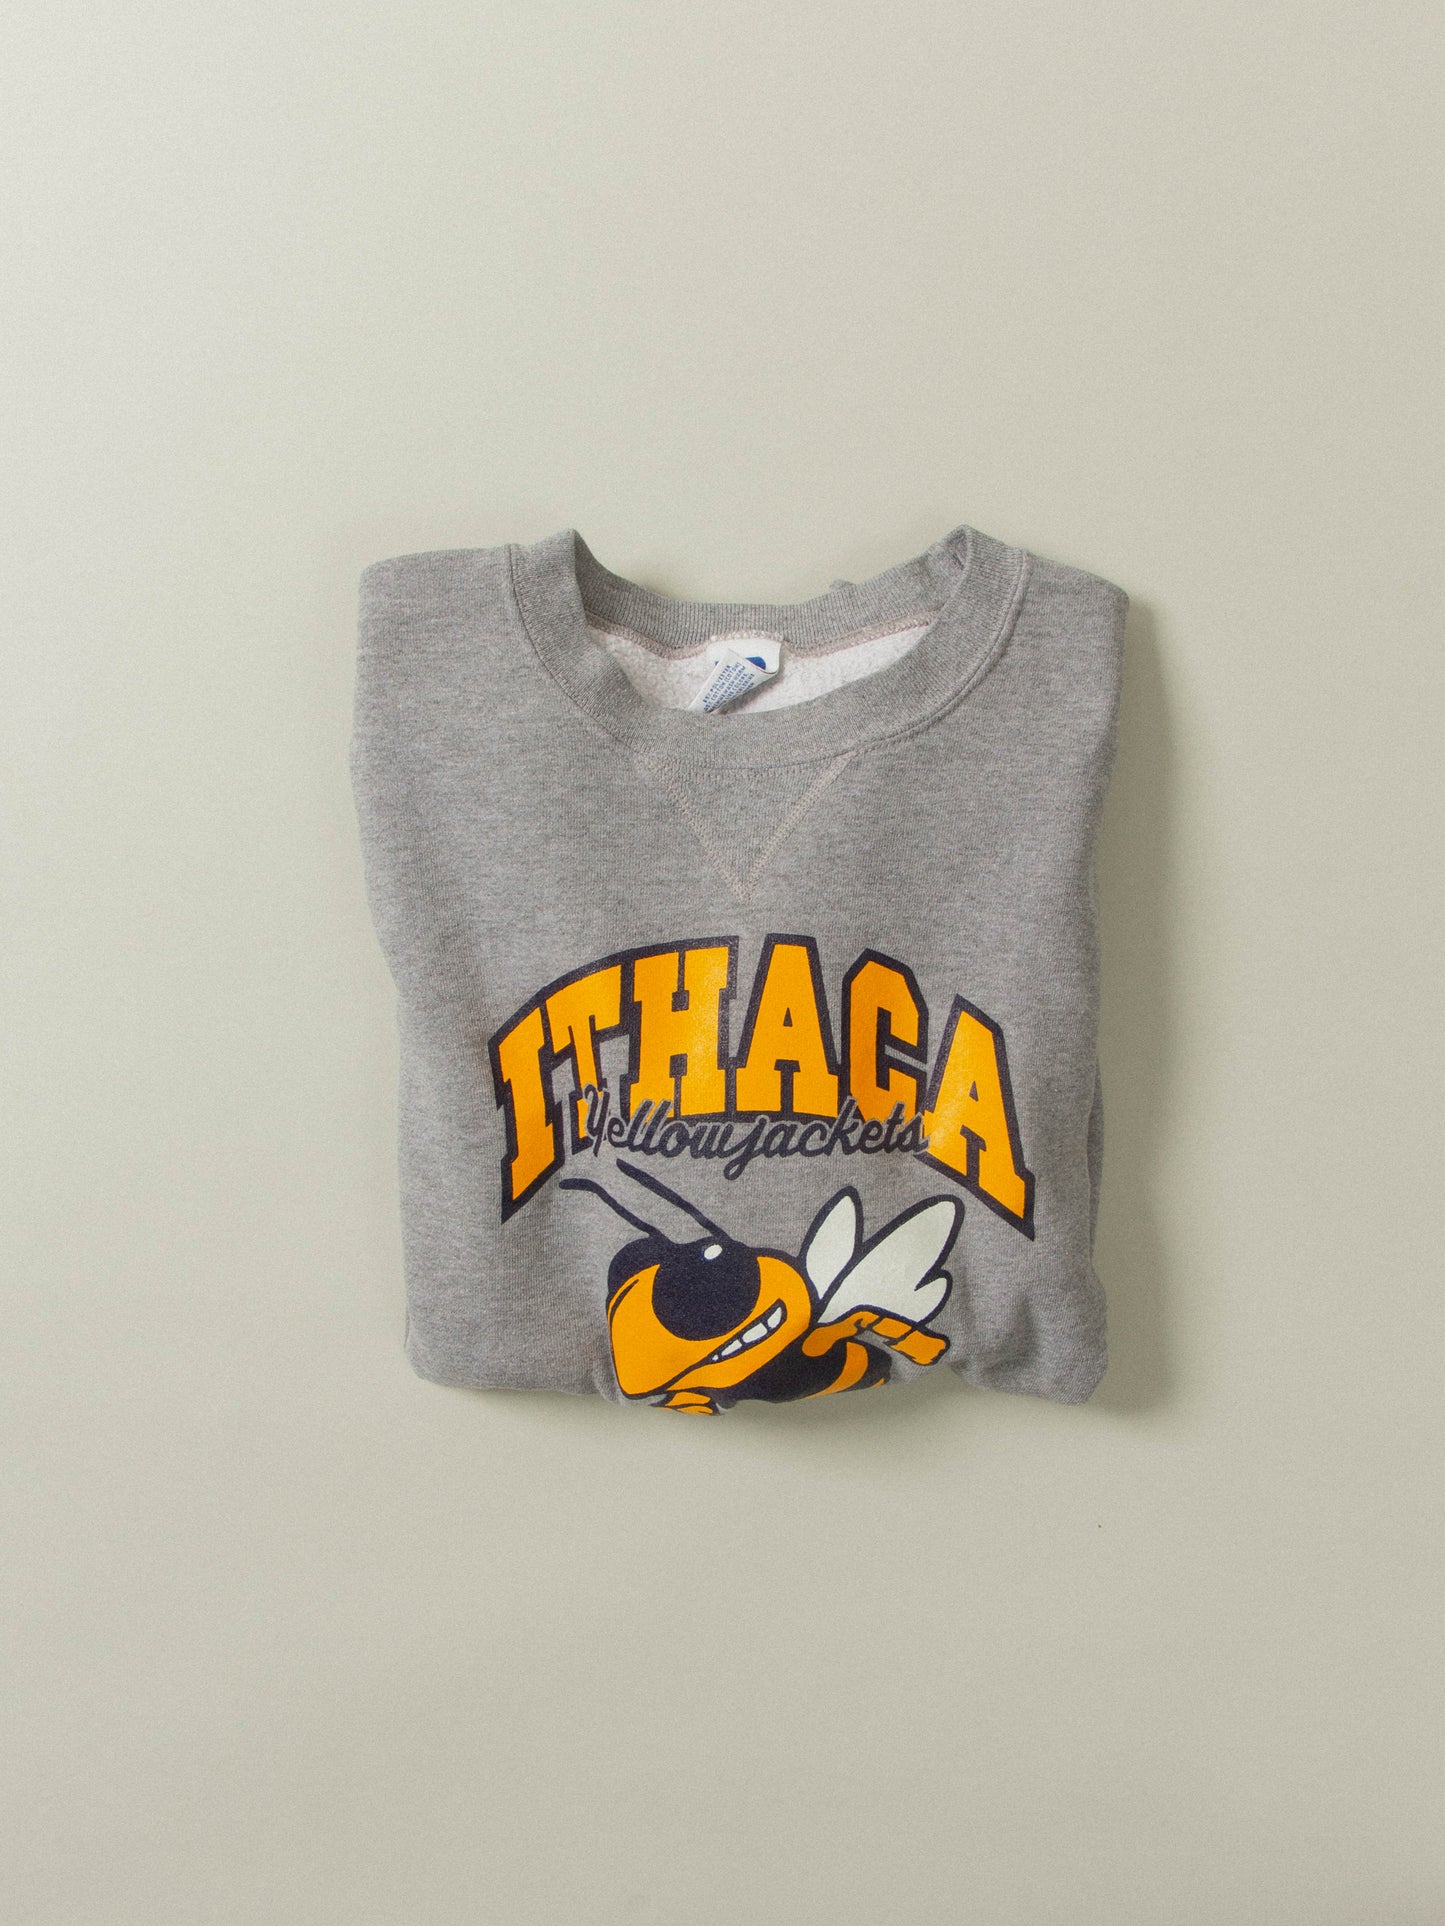 Vtg Russell Athletic Ithaca High School Sweatshirt (XL)